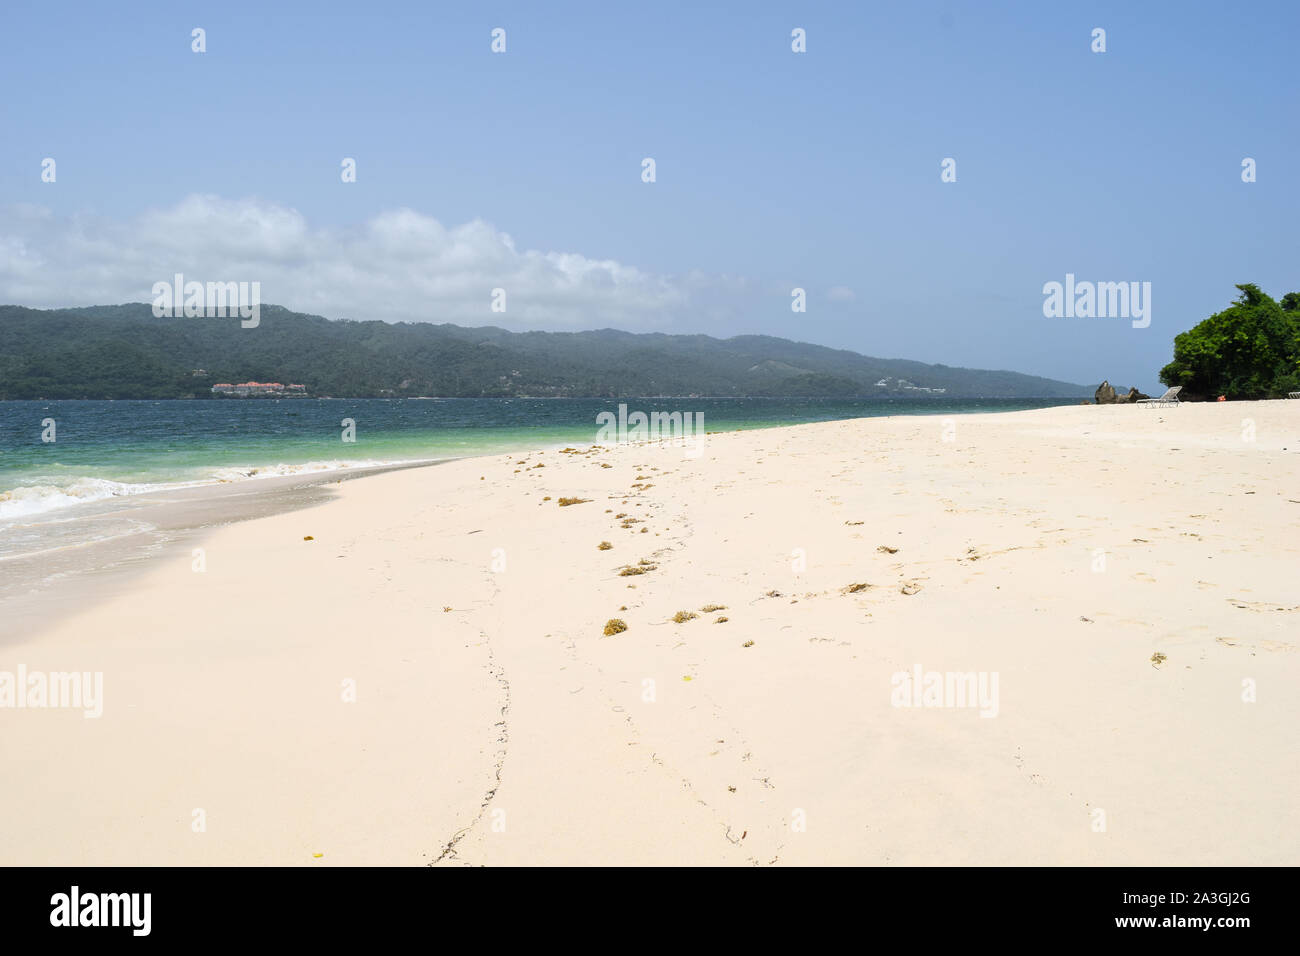 Plage blanche dans la mer des caraïbes, sable blanc, océan turquoise et ciel bleu Banque D'Images